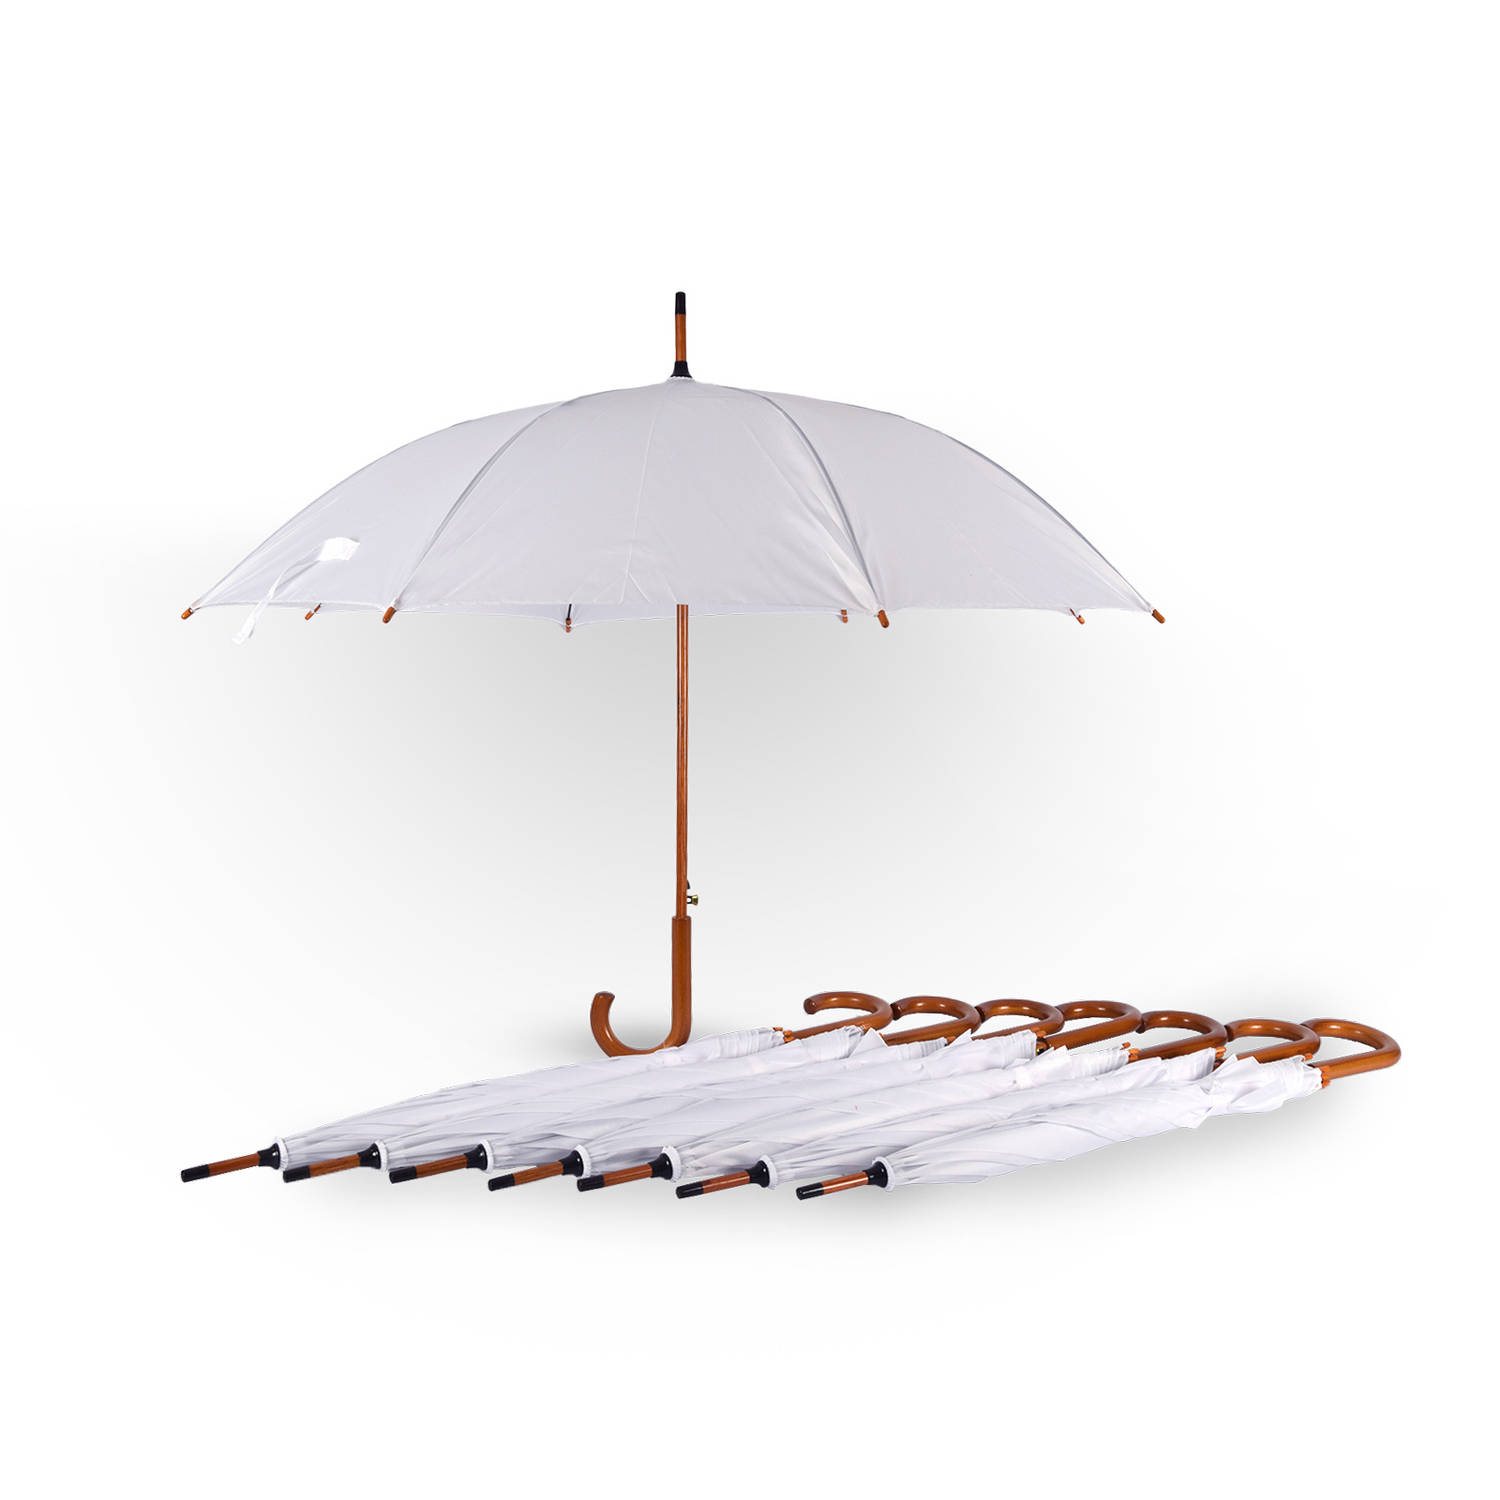 Set van 8 Elegante Witte Trouwparaplu's | Automatisch Opvouwbaar - 102 cm Diameter - Windproof | Ideaal voor Bruiloftsgasten en Eregeschenken